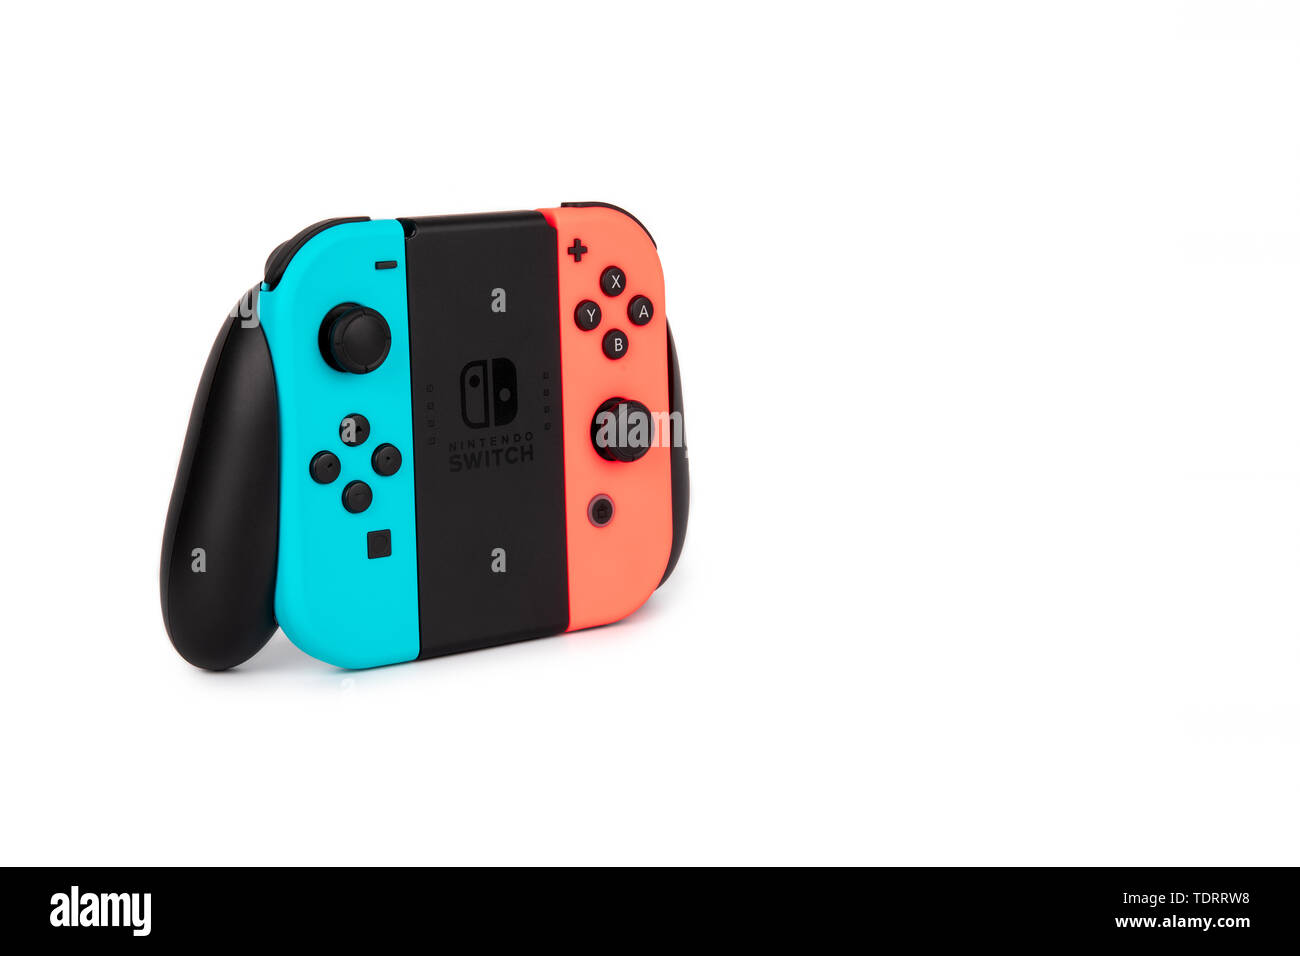 Nintendo Schalter Freude-con Controller auf weißem Hintergrund  Stockfotografie - Alamy